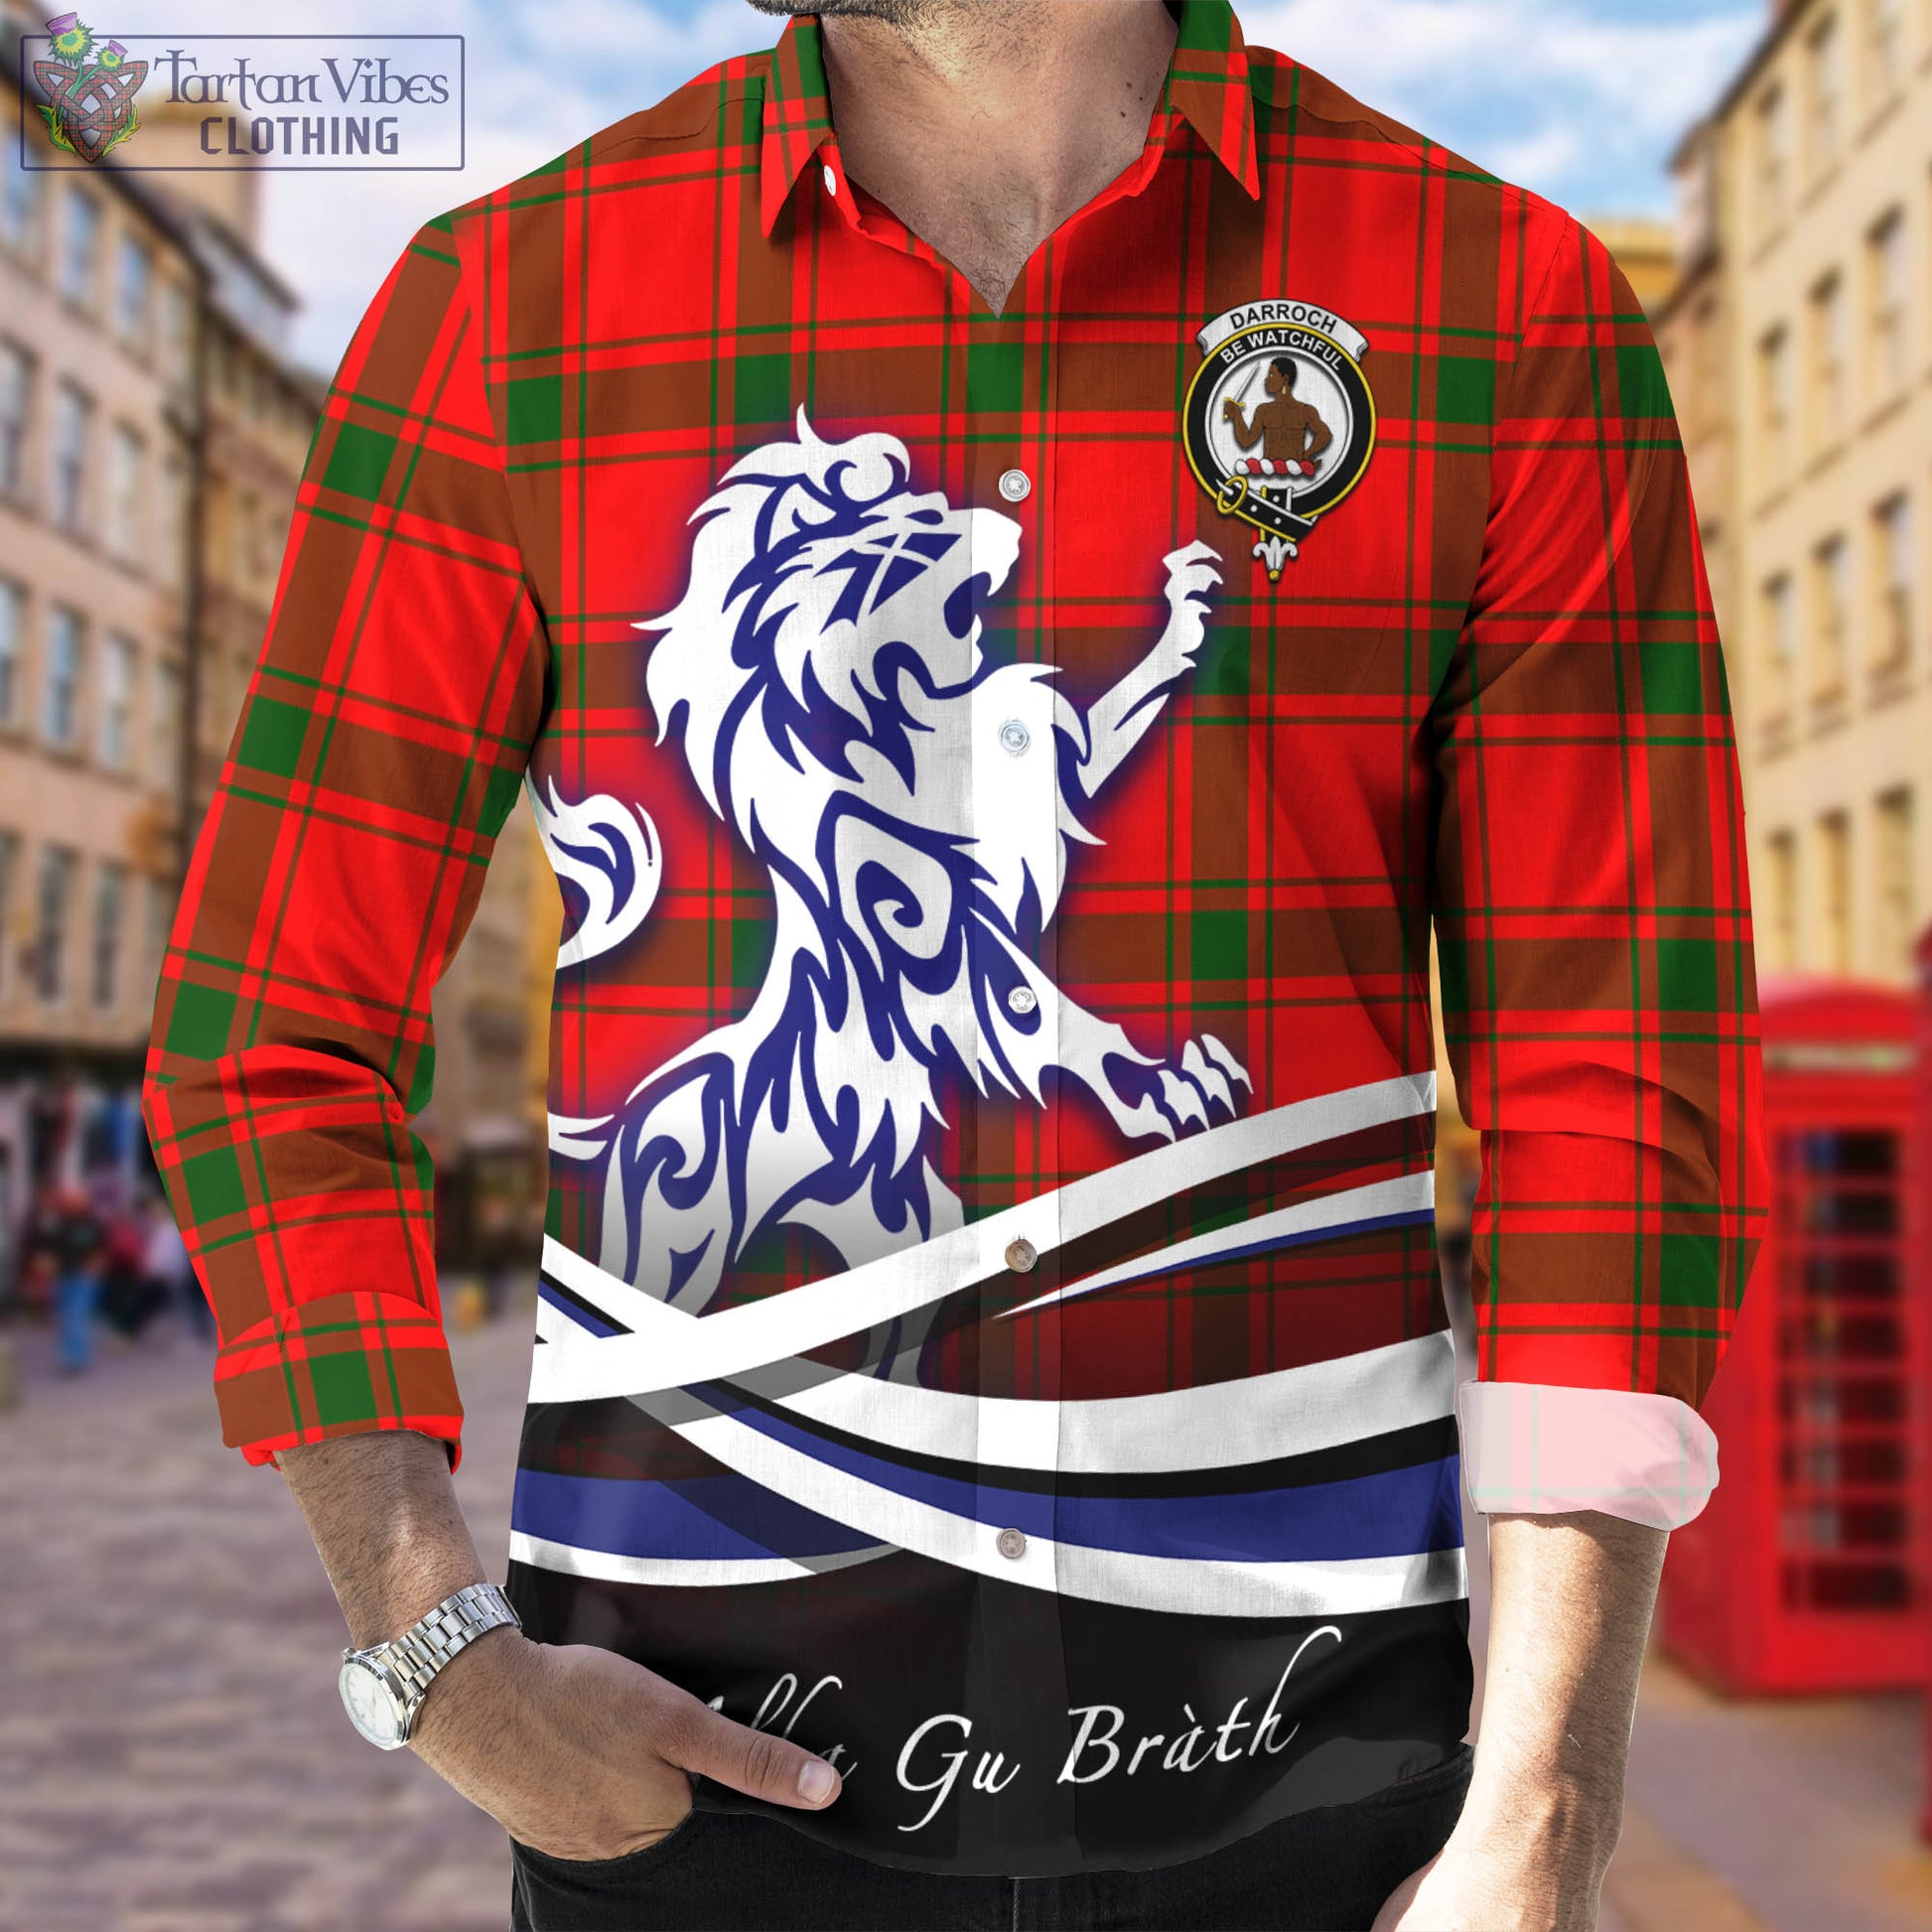 darroch-tartan-long-sleeve-button-up-shirt-with-alba-gu-brath-regal-lion-emblem